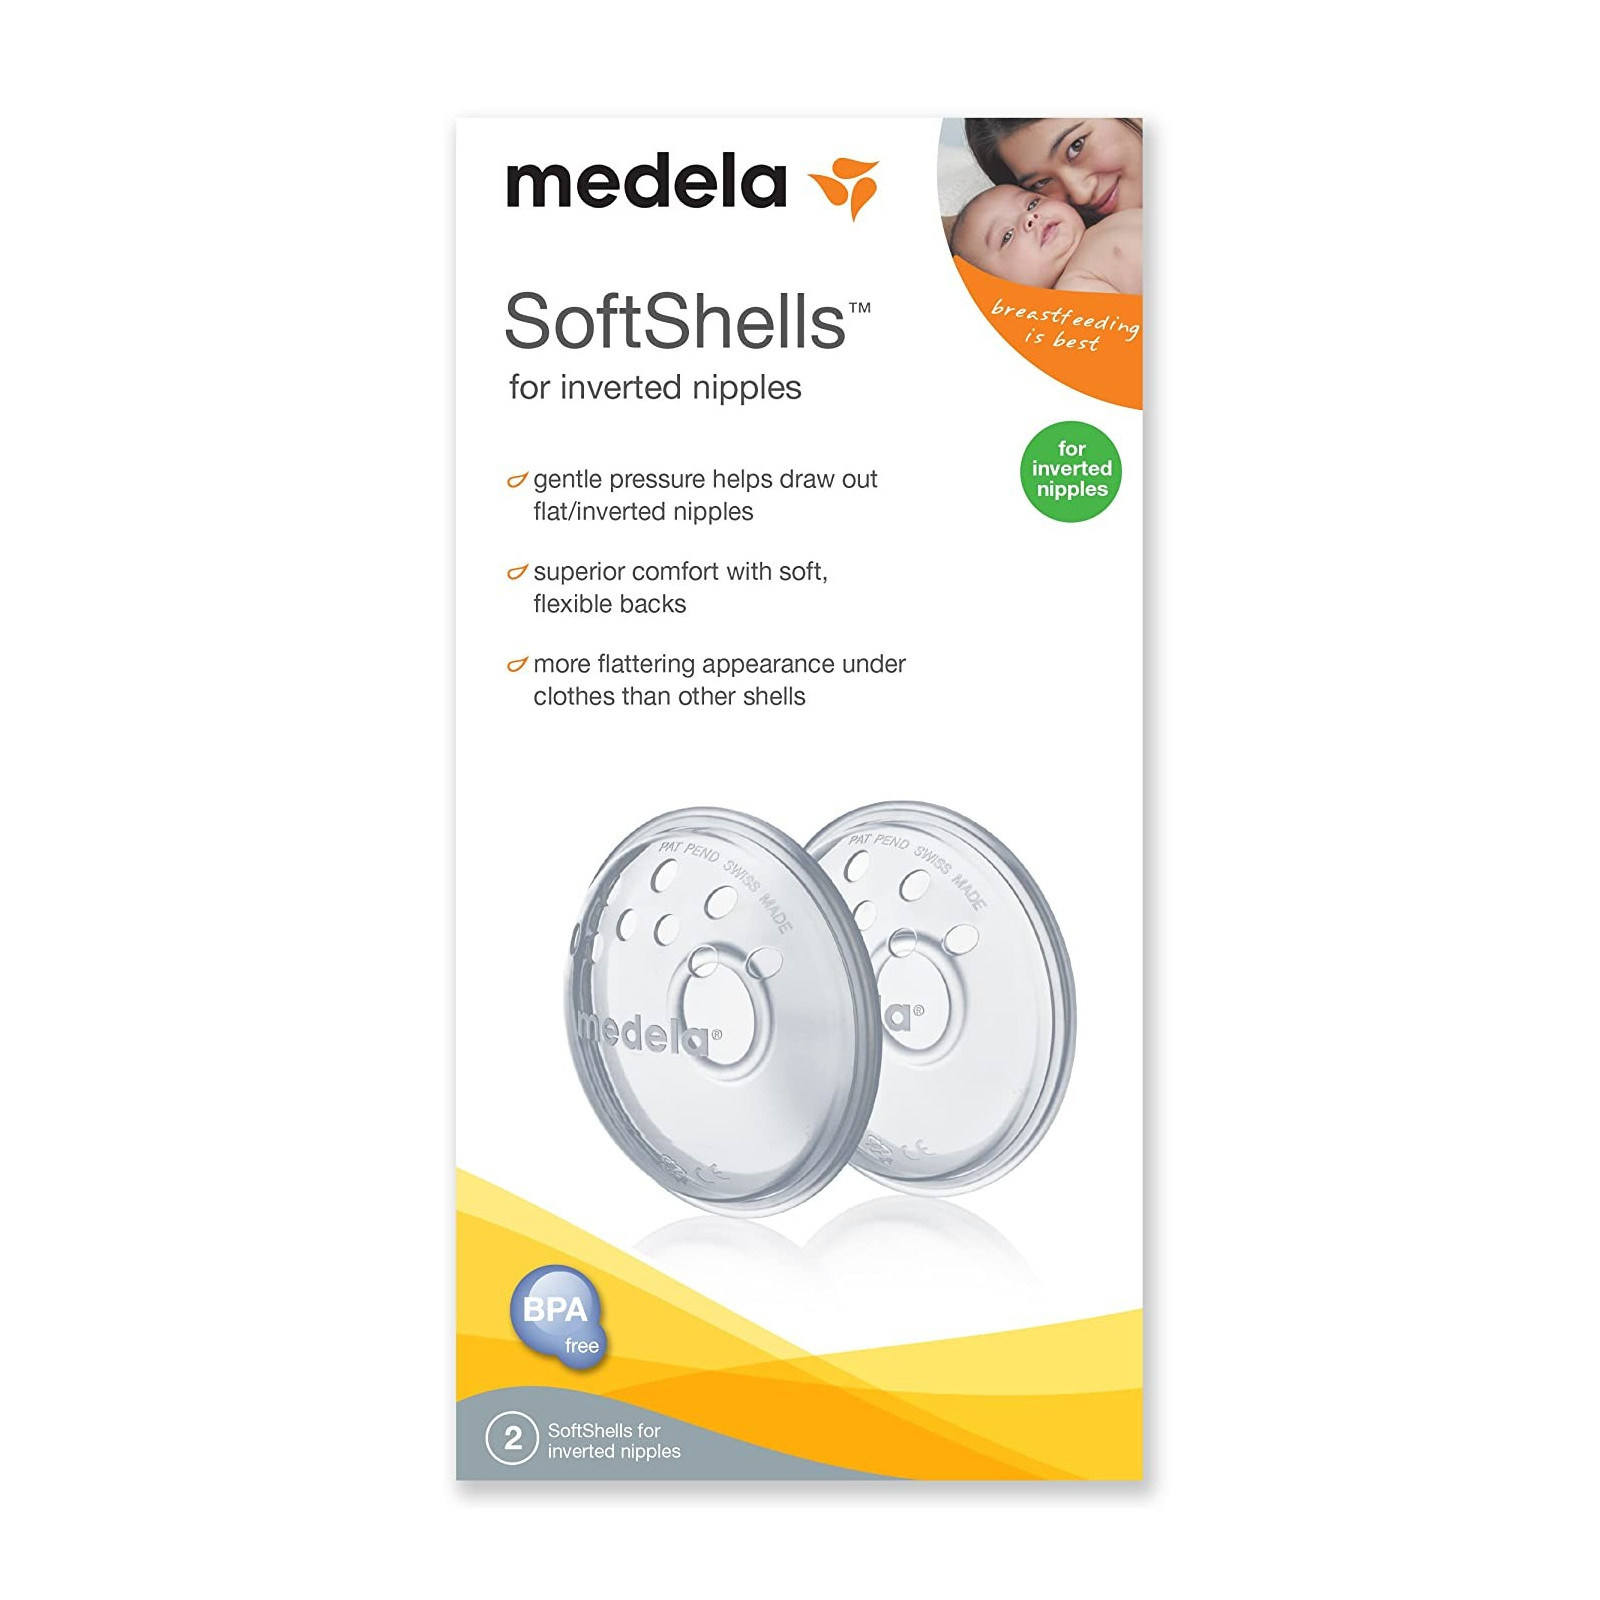 Medela TheraShells Breast Shells